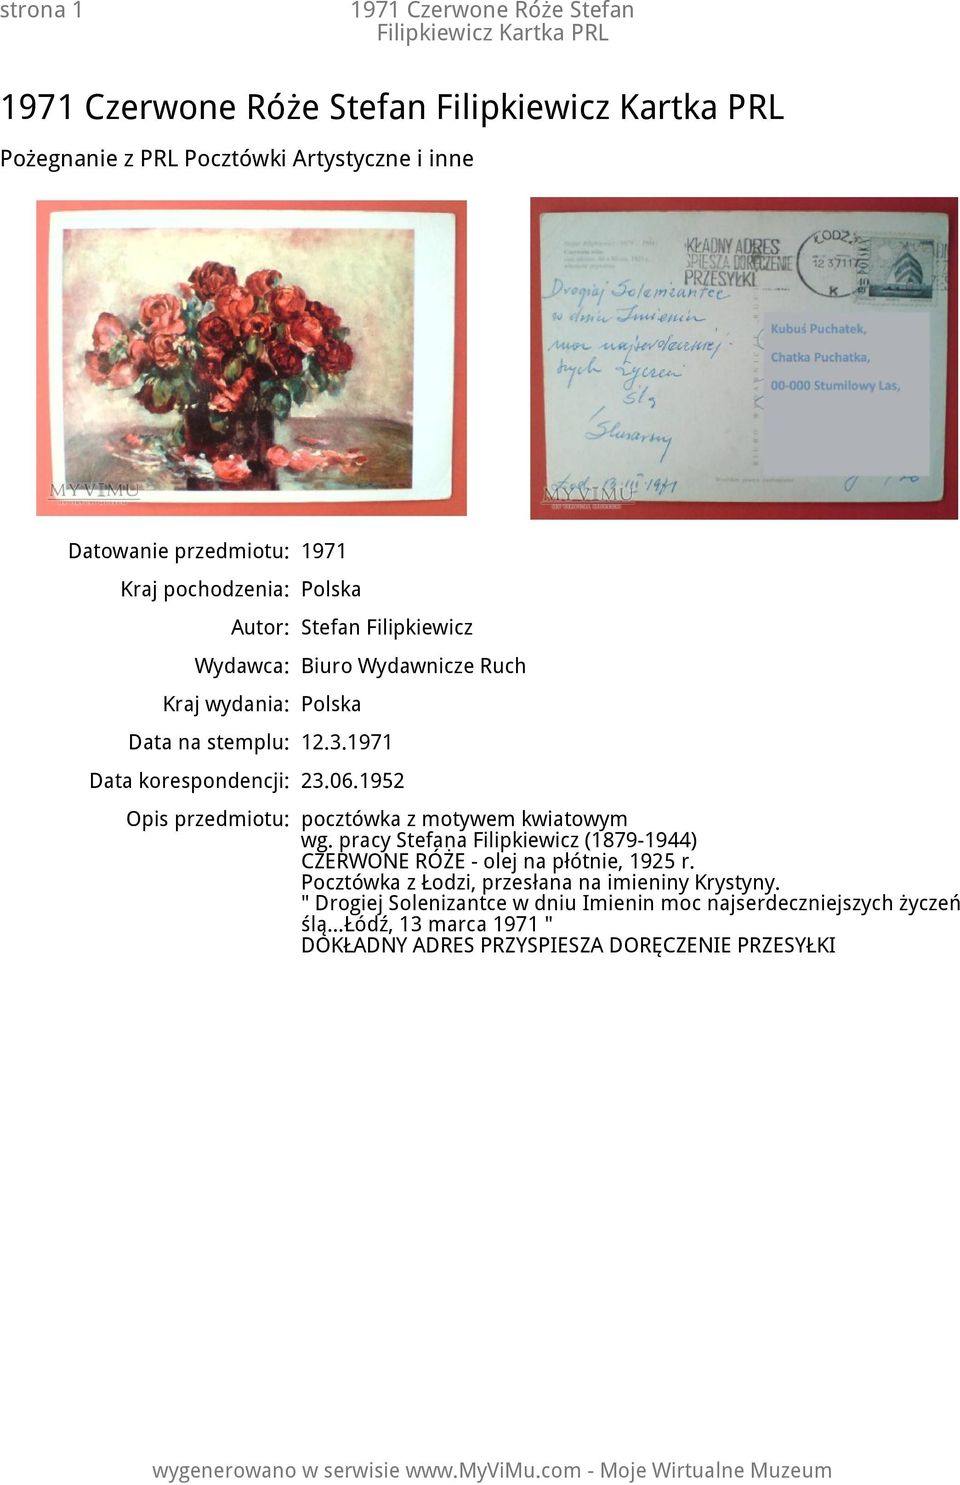 1952 Opis przedmiotu: pocztówka z motywem kwiatowym wg. pracy Stefana Filipkiewicz (1879-1944) CZERWONE RÓŻE - olej na płótnie, 1925 r.